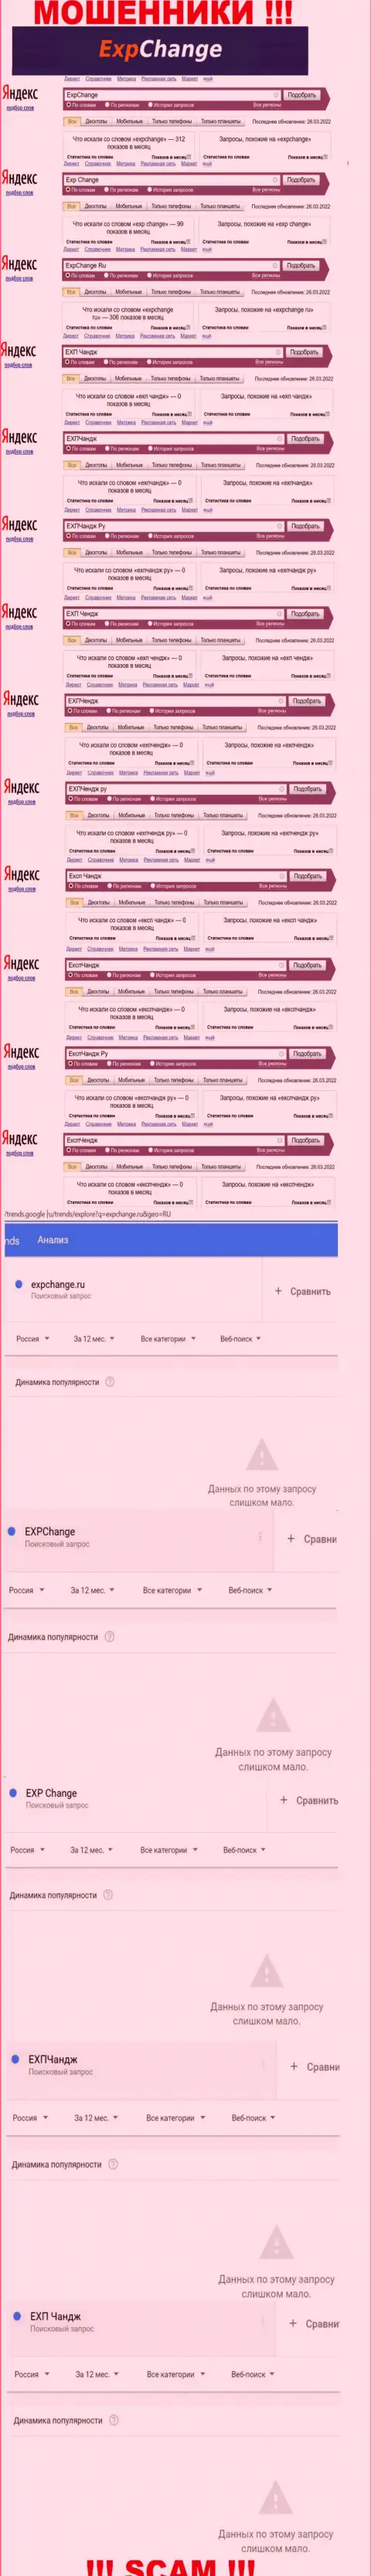 Суммарное число онлайн-запросов пользователями глобальной сети инфы о мошенниках ExpChange Ru